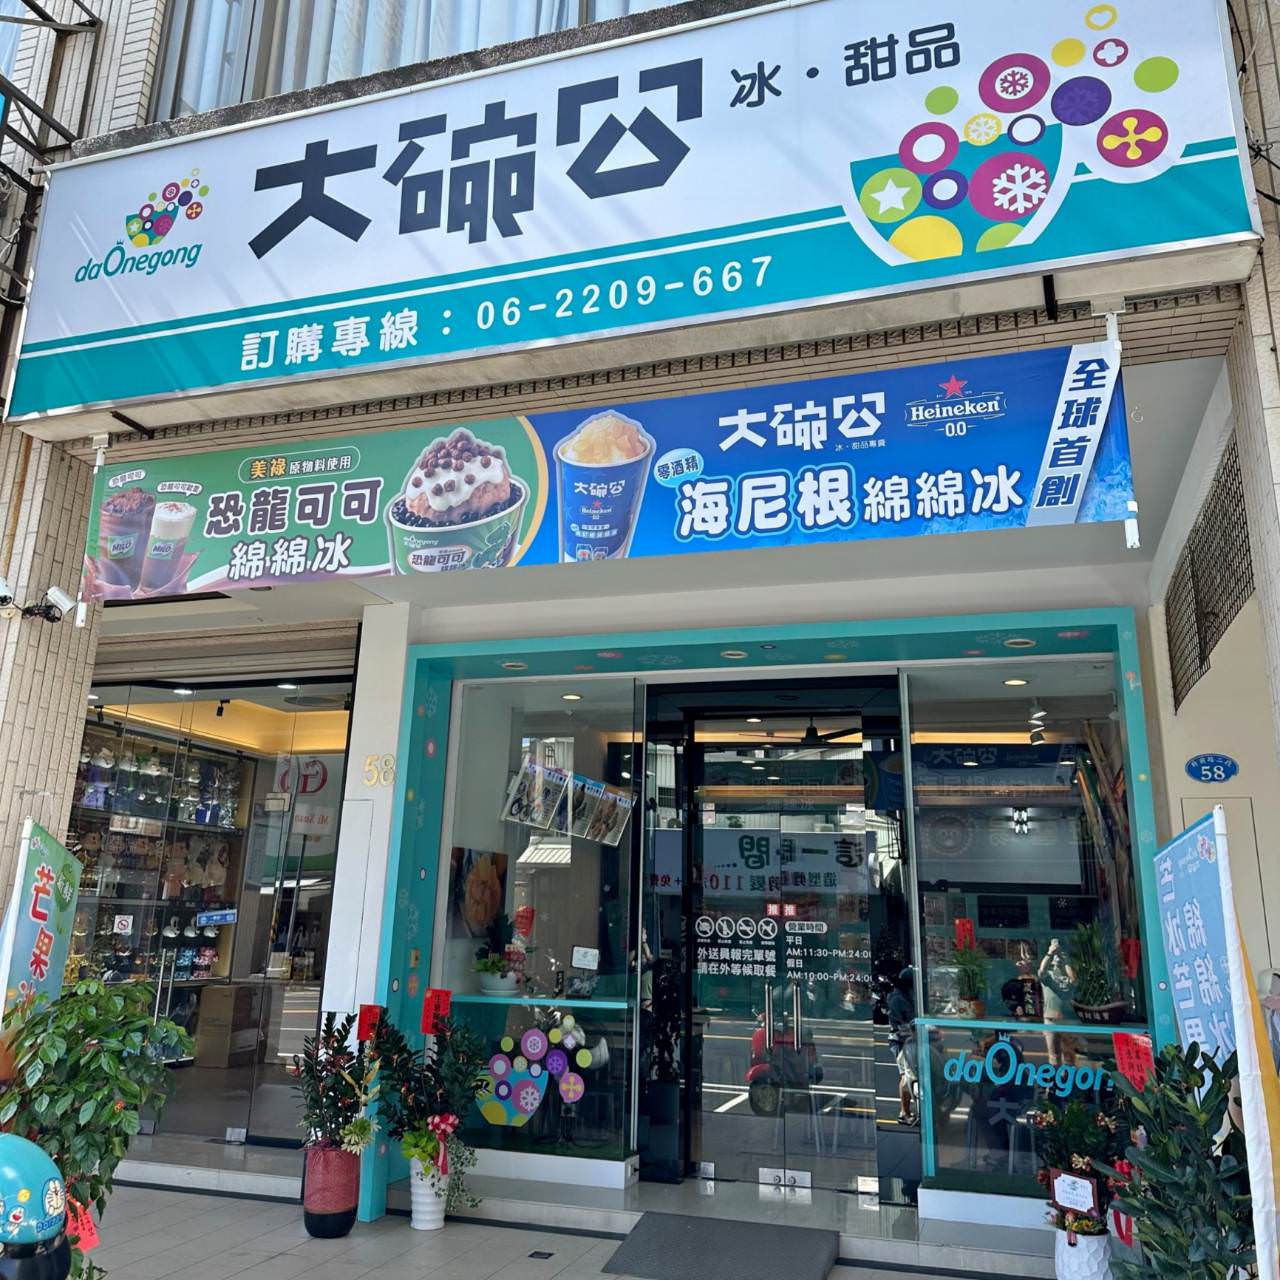 大碗公冰甜品 台南府前店17 1